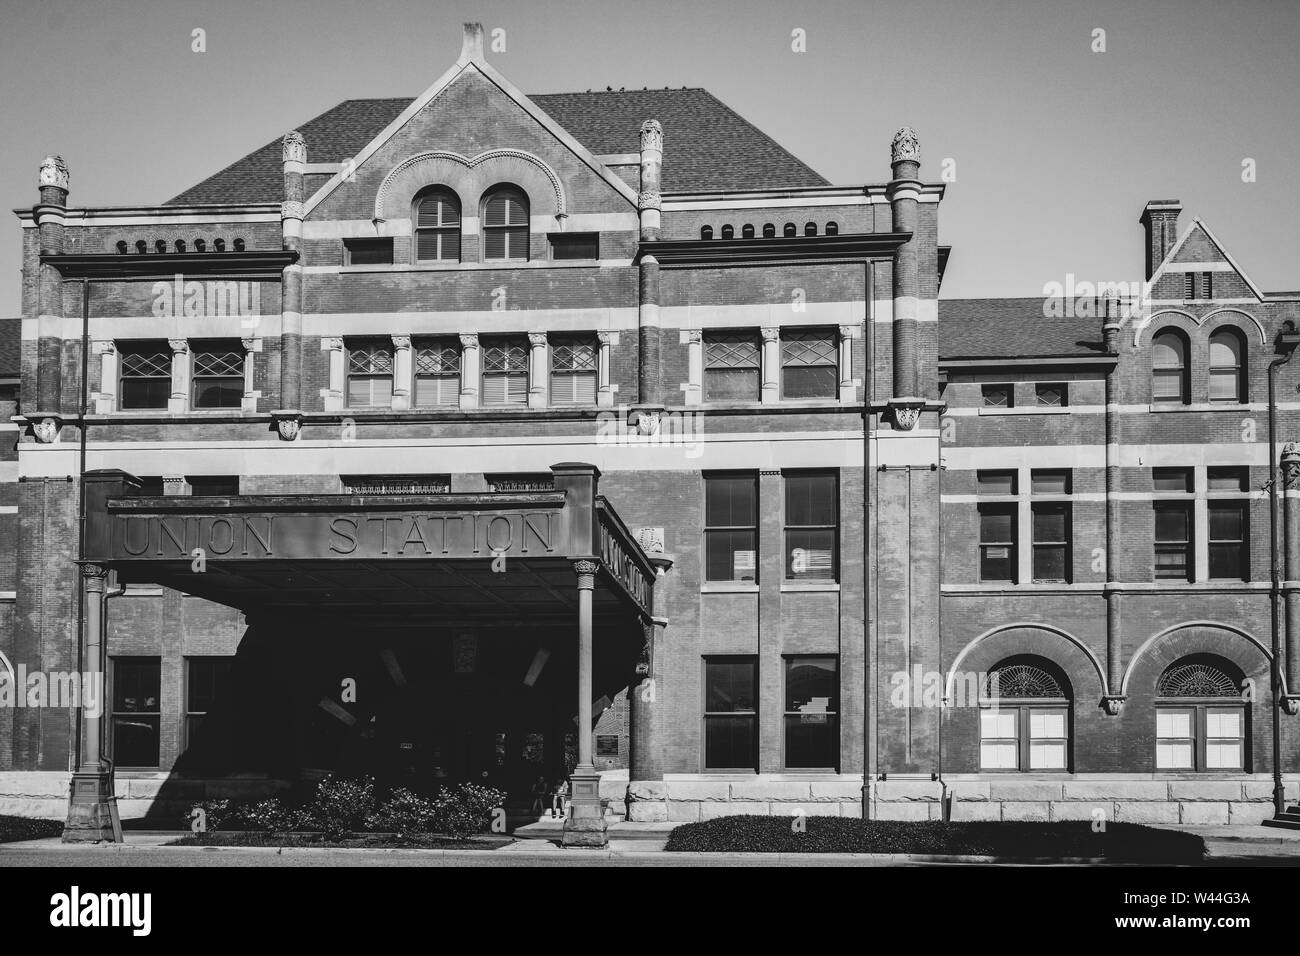 Die Union Station Gebäude, mit Neoromanischen Elementen, erbaut 1898, wiederbelebt für gewerbliche Mieter und Besucherzentrum in Montgomery, AL Stockfoto